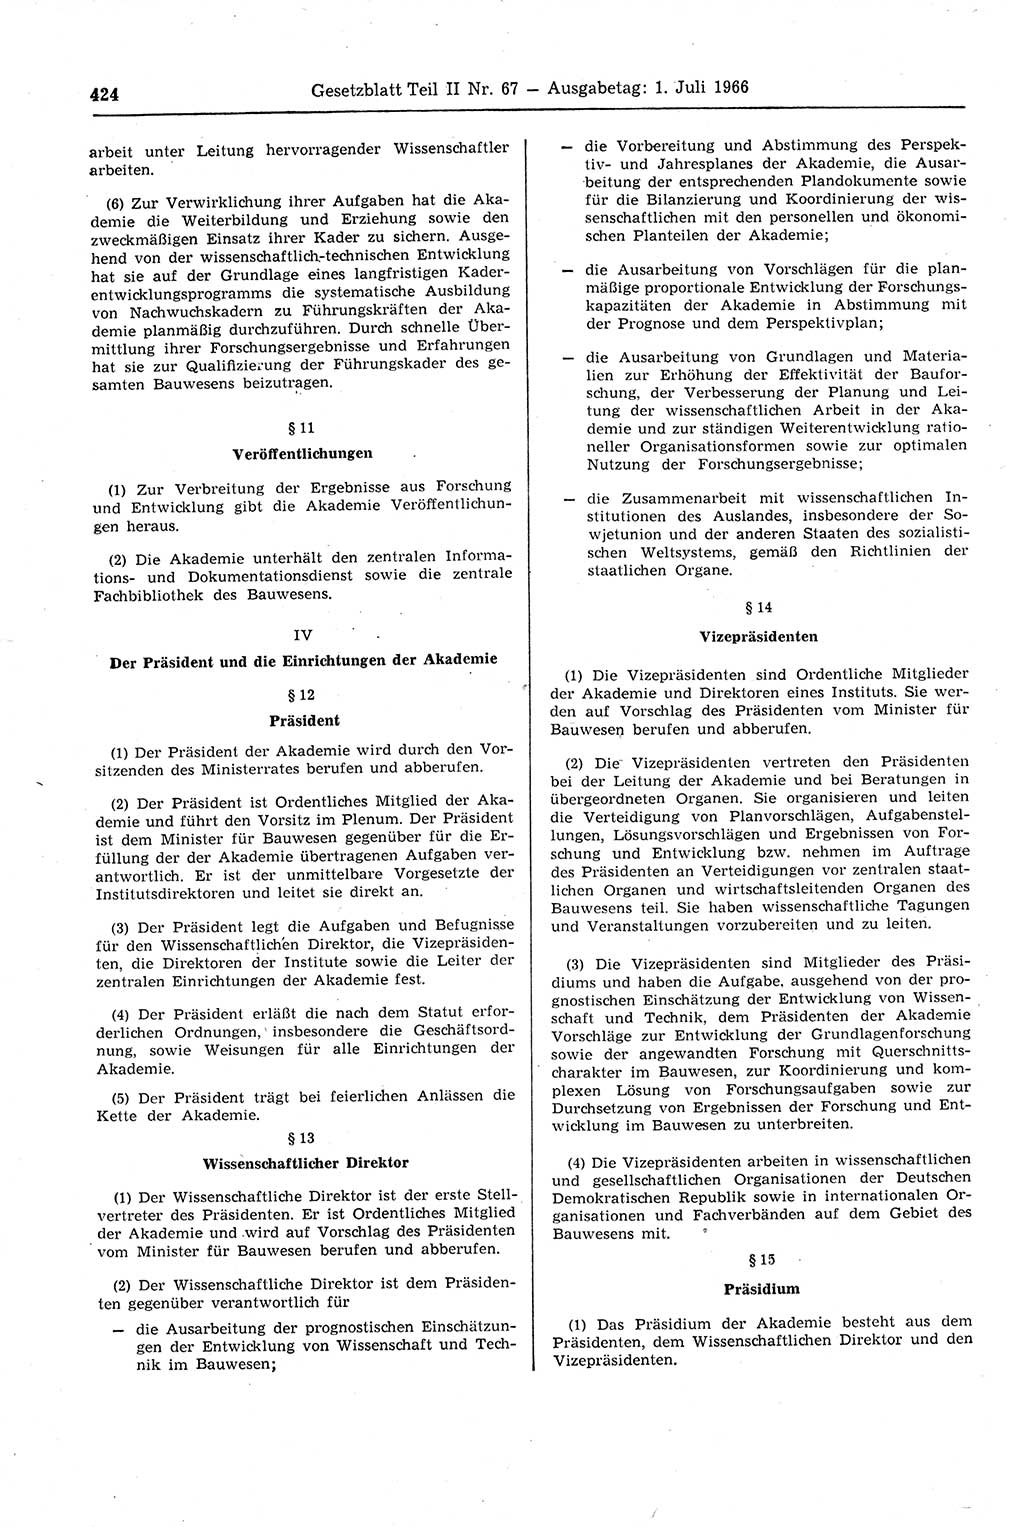 Gesetzblatt (GBl.) der Deutschen Demokratischen Republik (DDR) Teil ⅠⅠ 1966, Seite 424 (GBl. DDR ⅠⅠ 1966, S. 424)